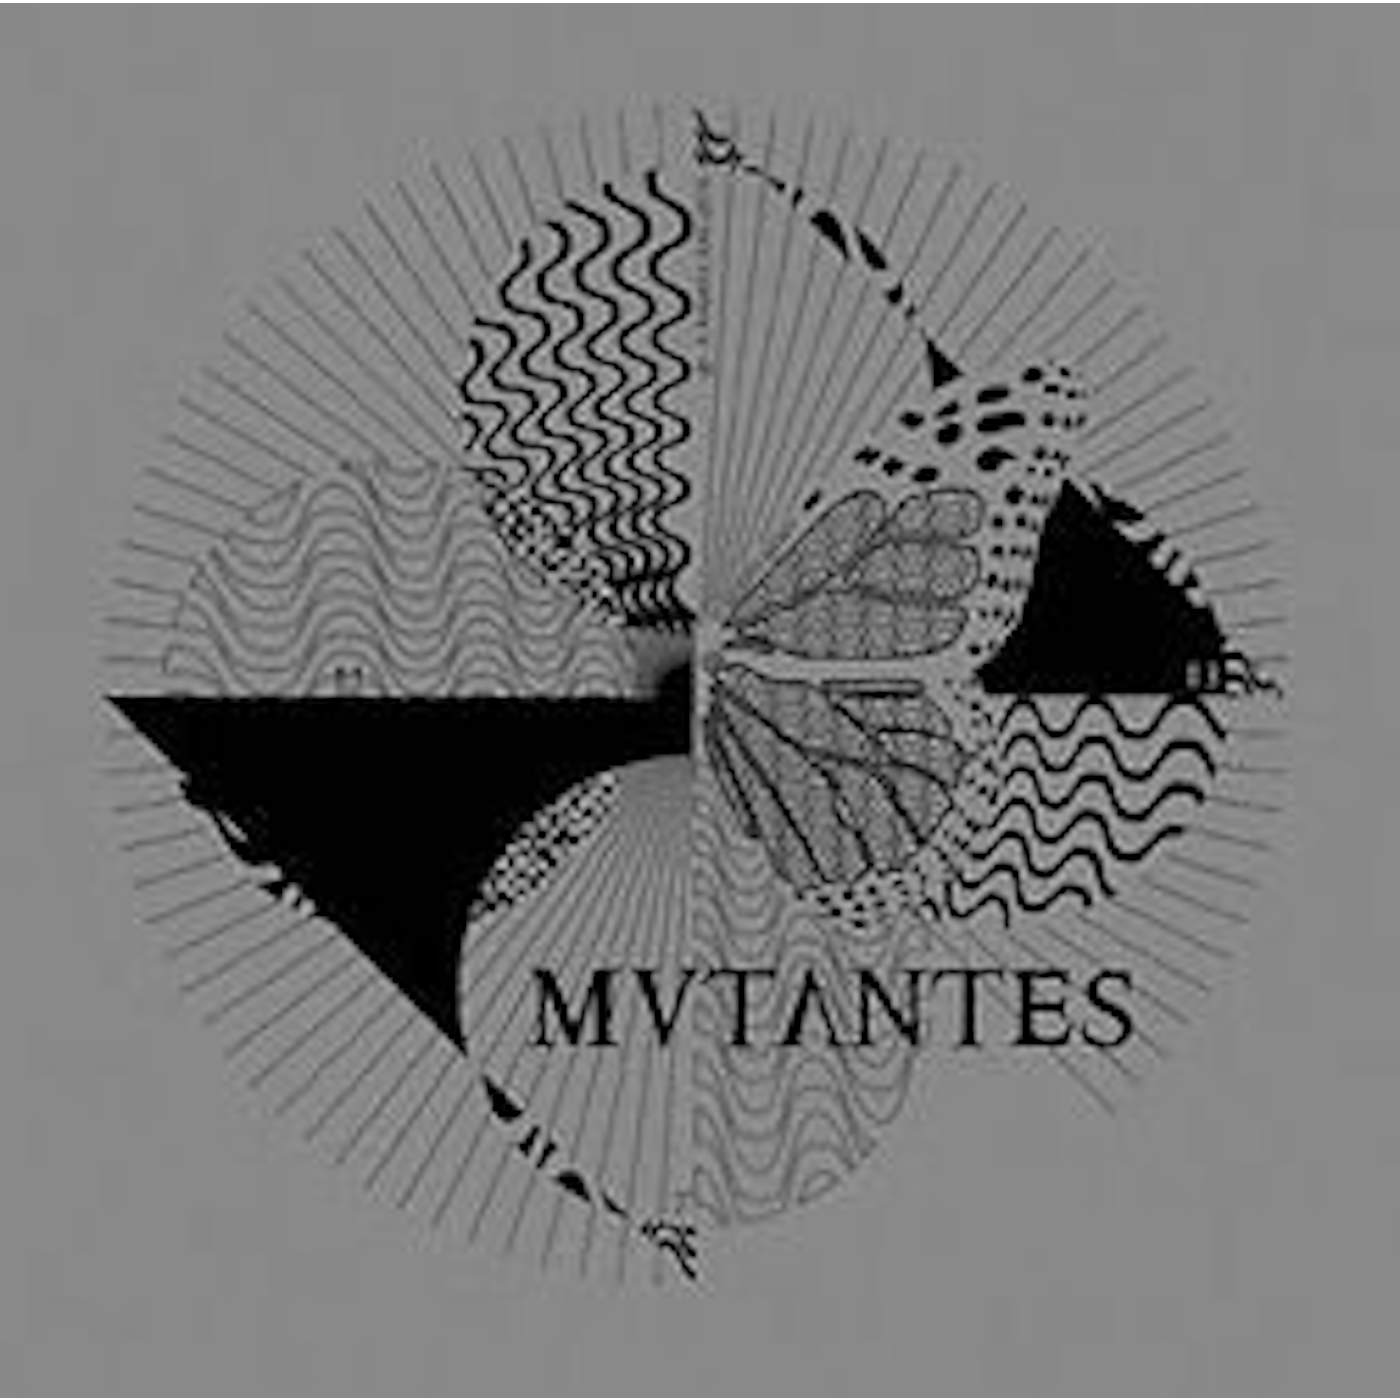 Mutantes AO VIVO LONDRES 1 CD